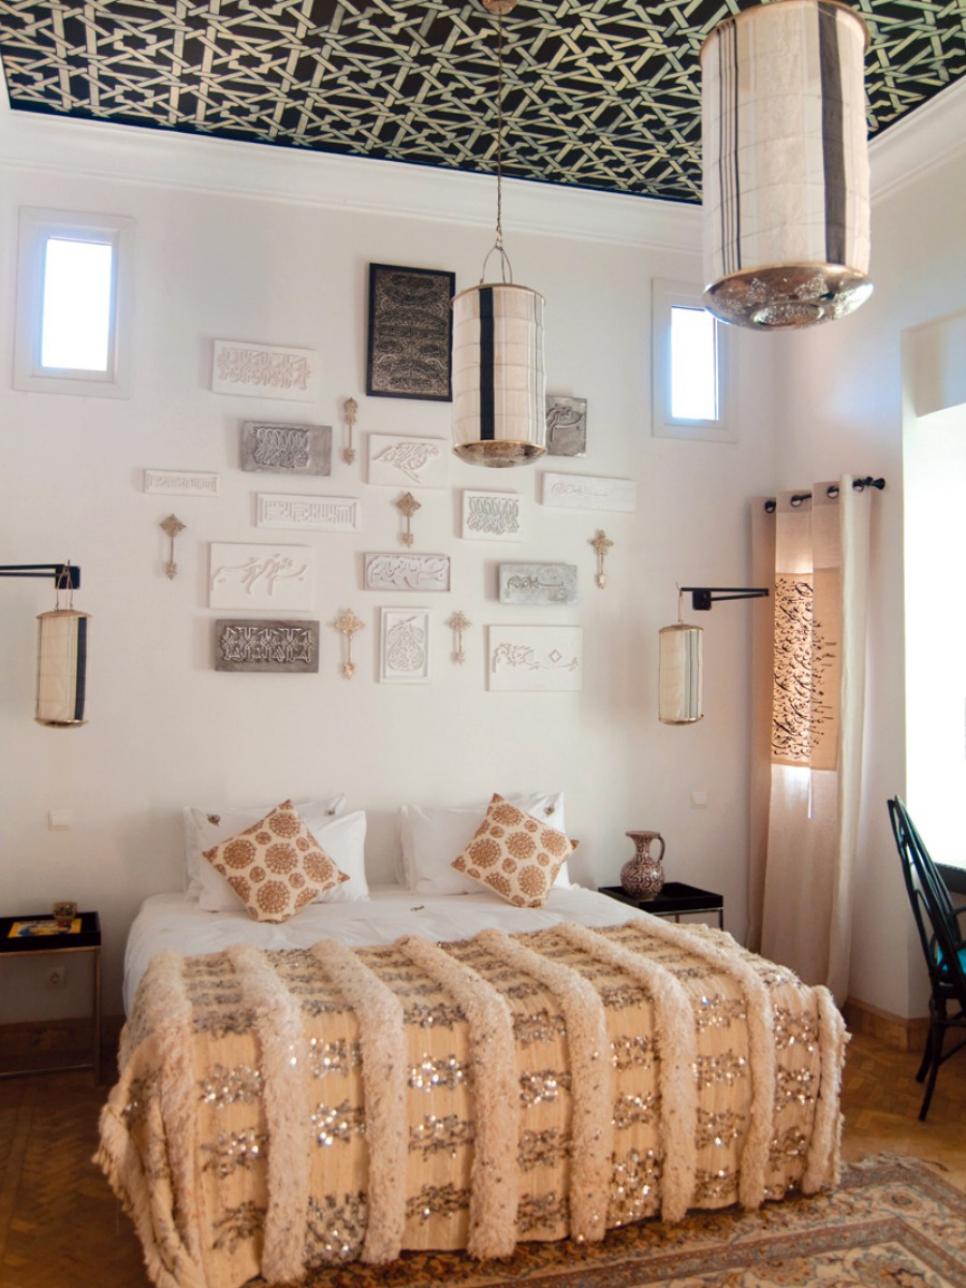 Moroccan Decor Ideas for Home | HGTV